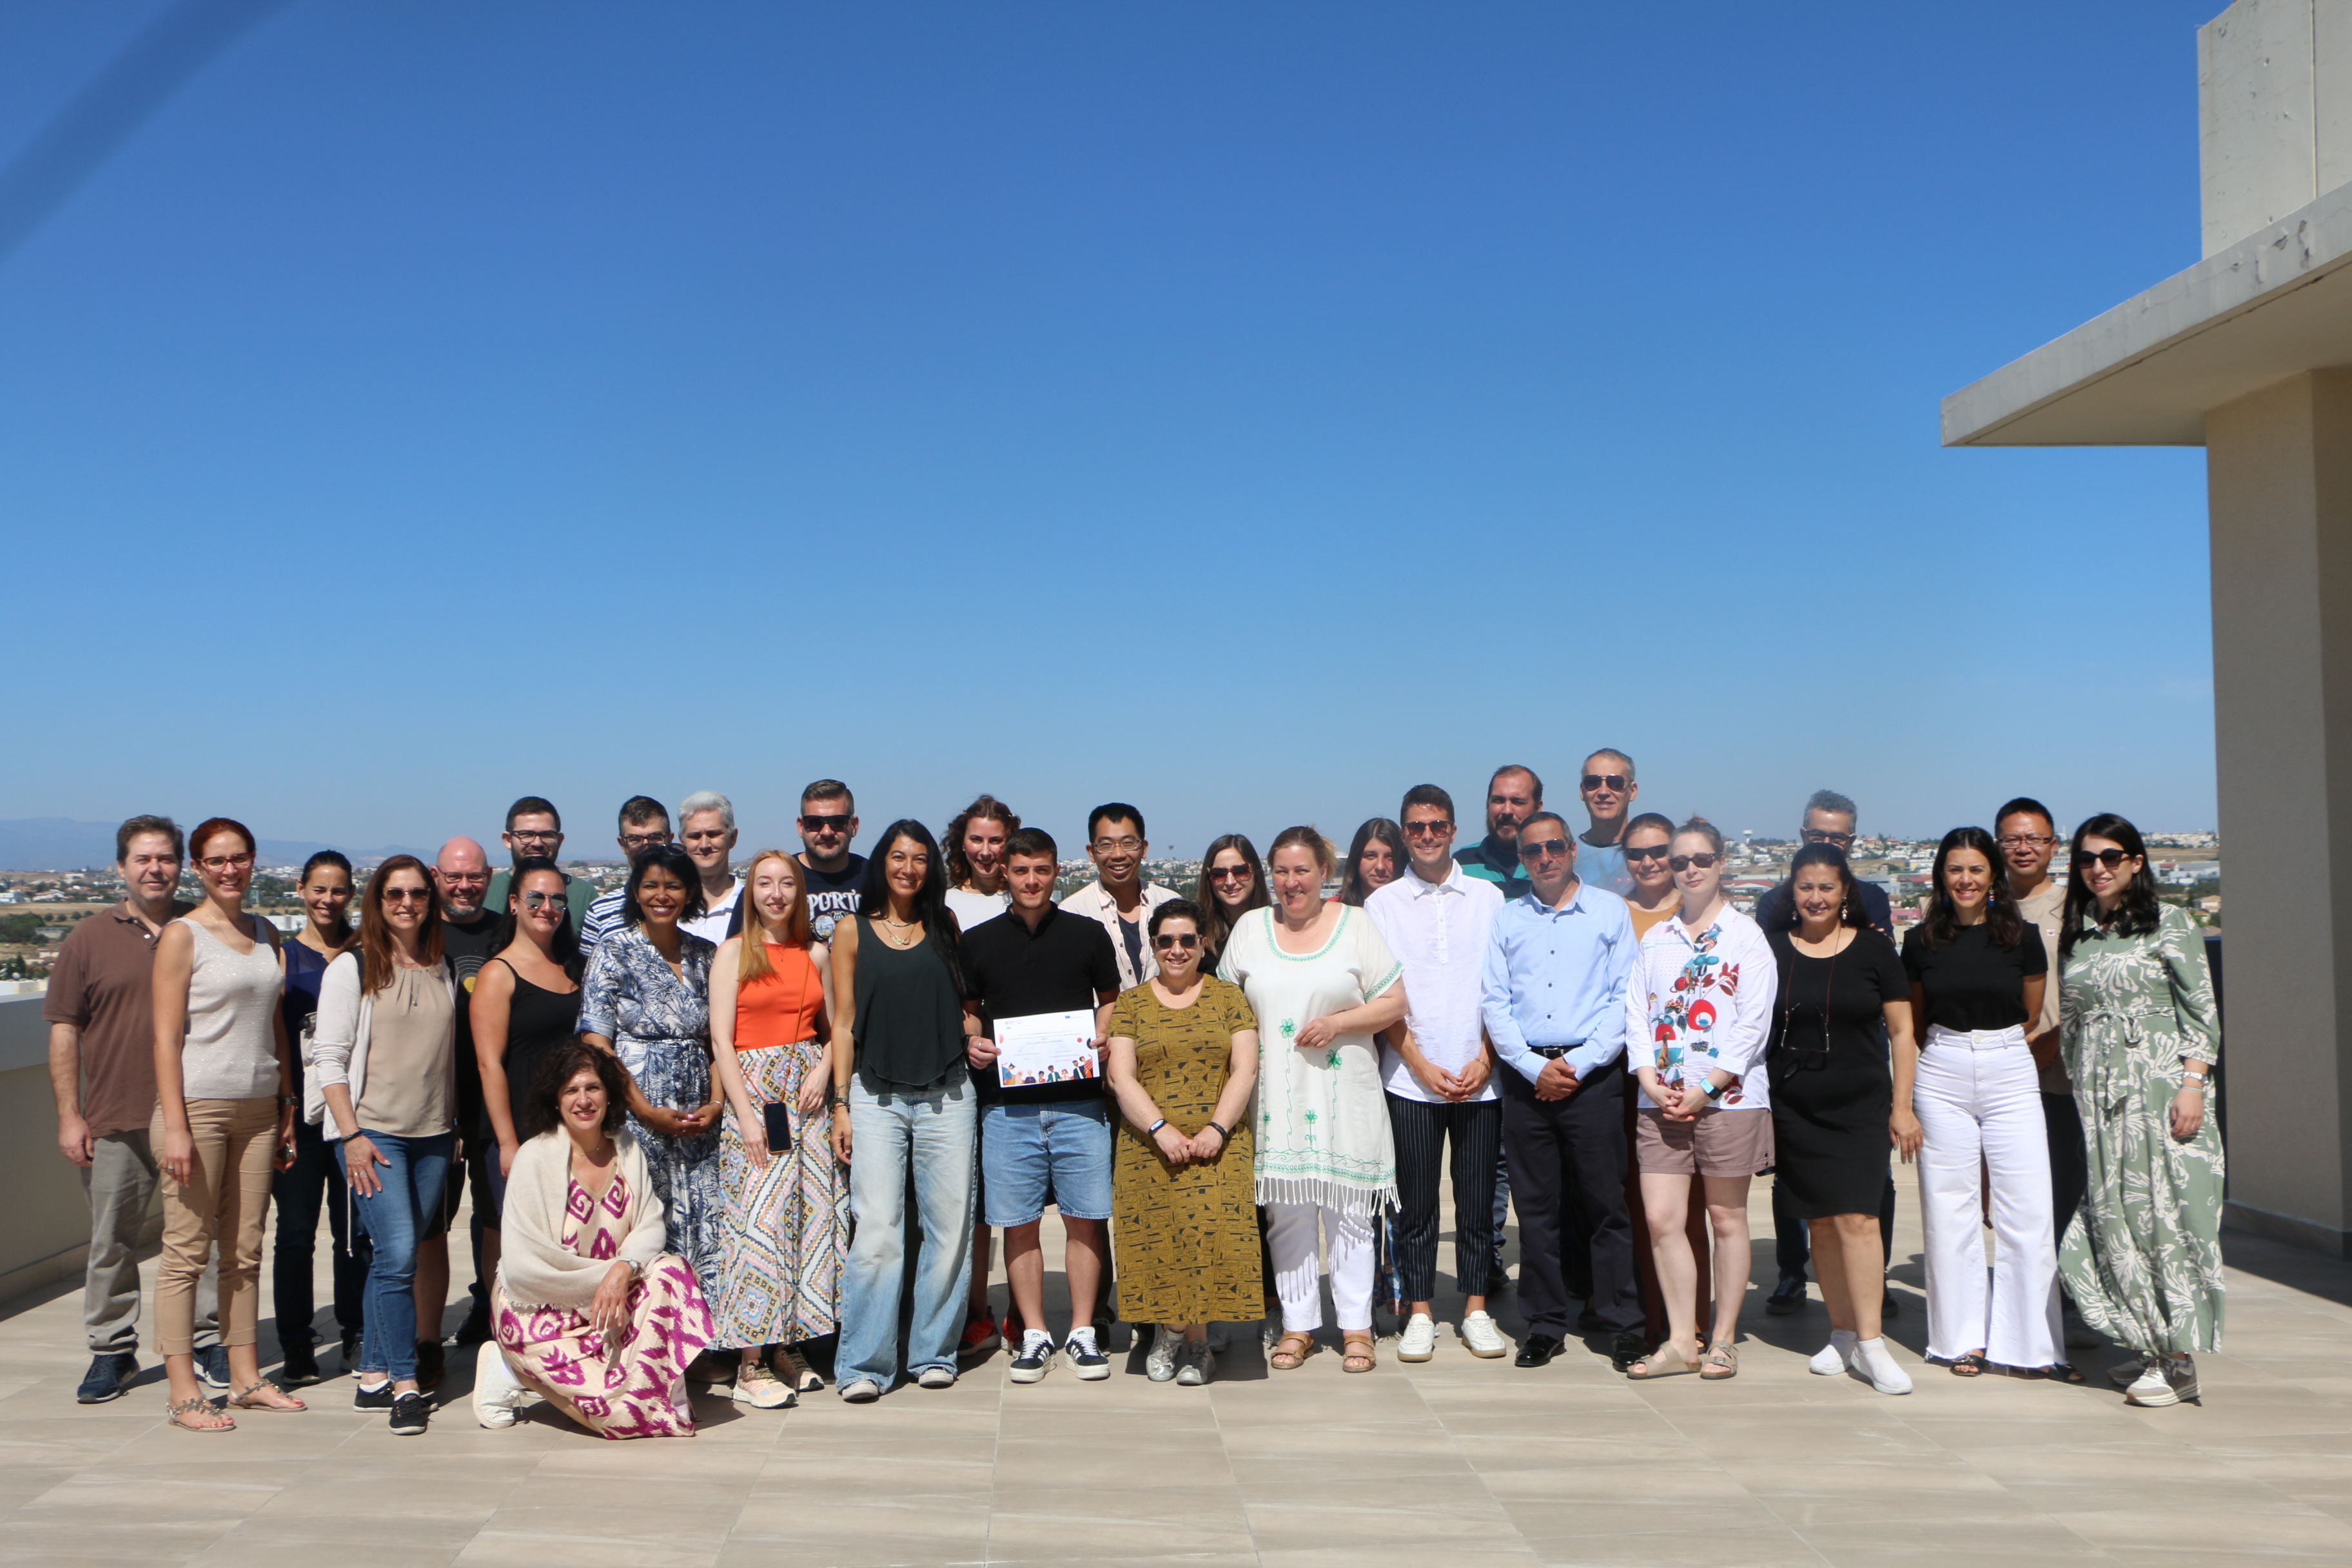 Ολοκληρώθηκαν με μεγάλη επιτυχία οι εργασίες της 9ης Διεθνούς Εβδομάδας Επιμόρφωσης Erasmus+ στο Ανοικτό Πανεπιστήμιο Κύπρου